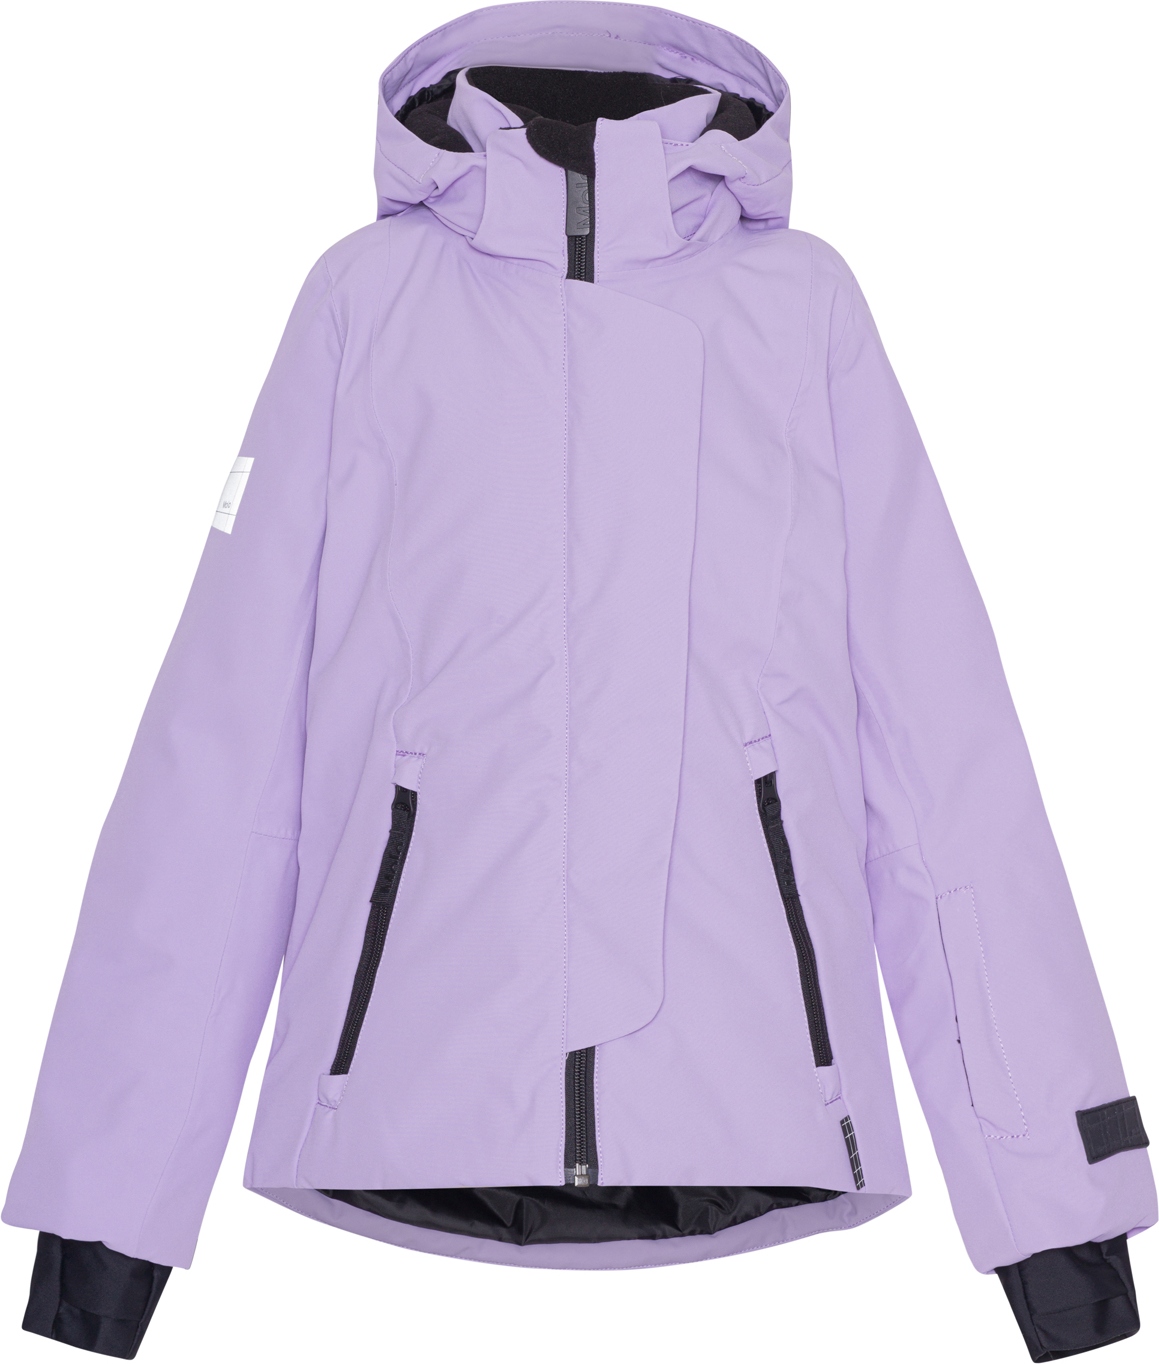 Куртка детская Molo Pearson, violet sky, 128, фиолетовый, для девочек  - купить